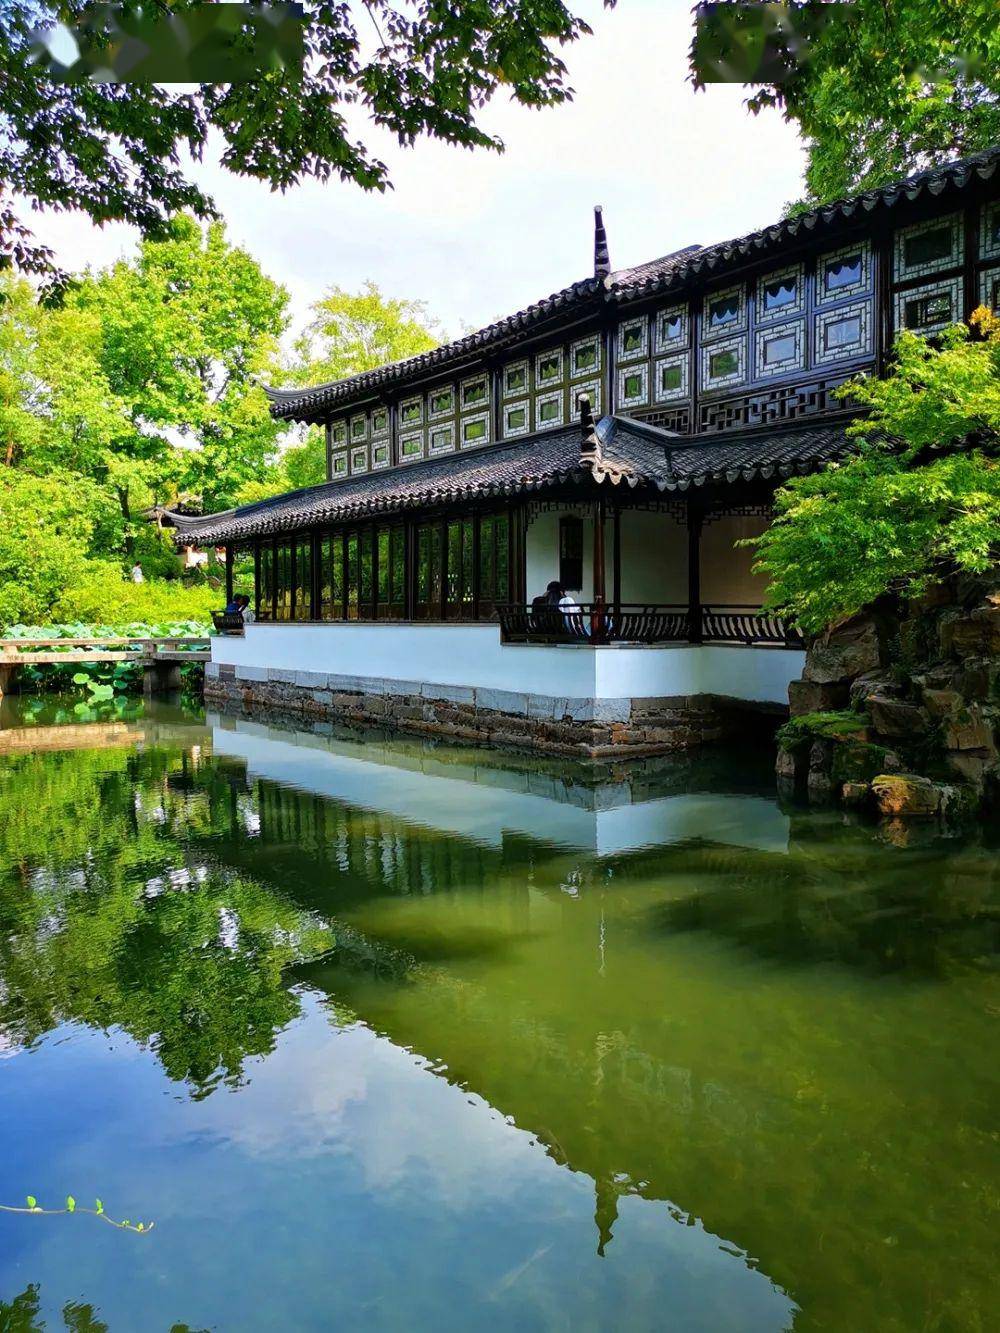 波哥带你看世界:世界文化遗产苏州古典园林,匠心独具的中华园林文化